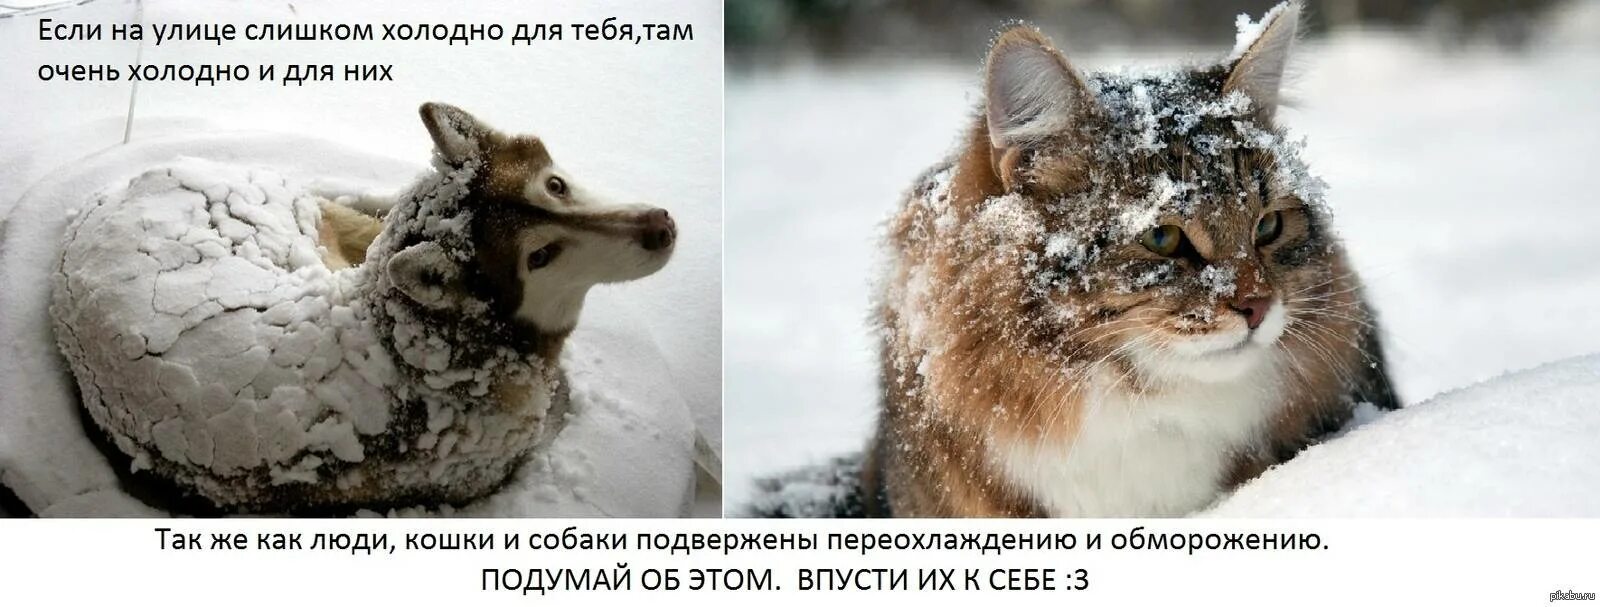 Бездомные животные зима. Замерзающие бездомные животные. Помогайте бездомным животным в Морозы. Бездомные животные мерзнут.